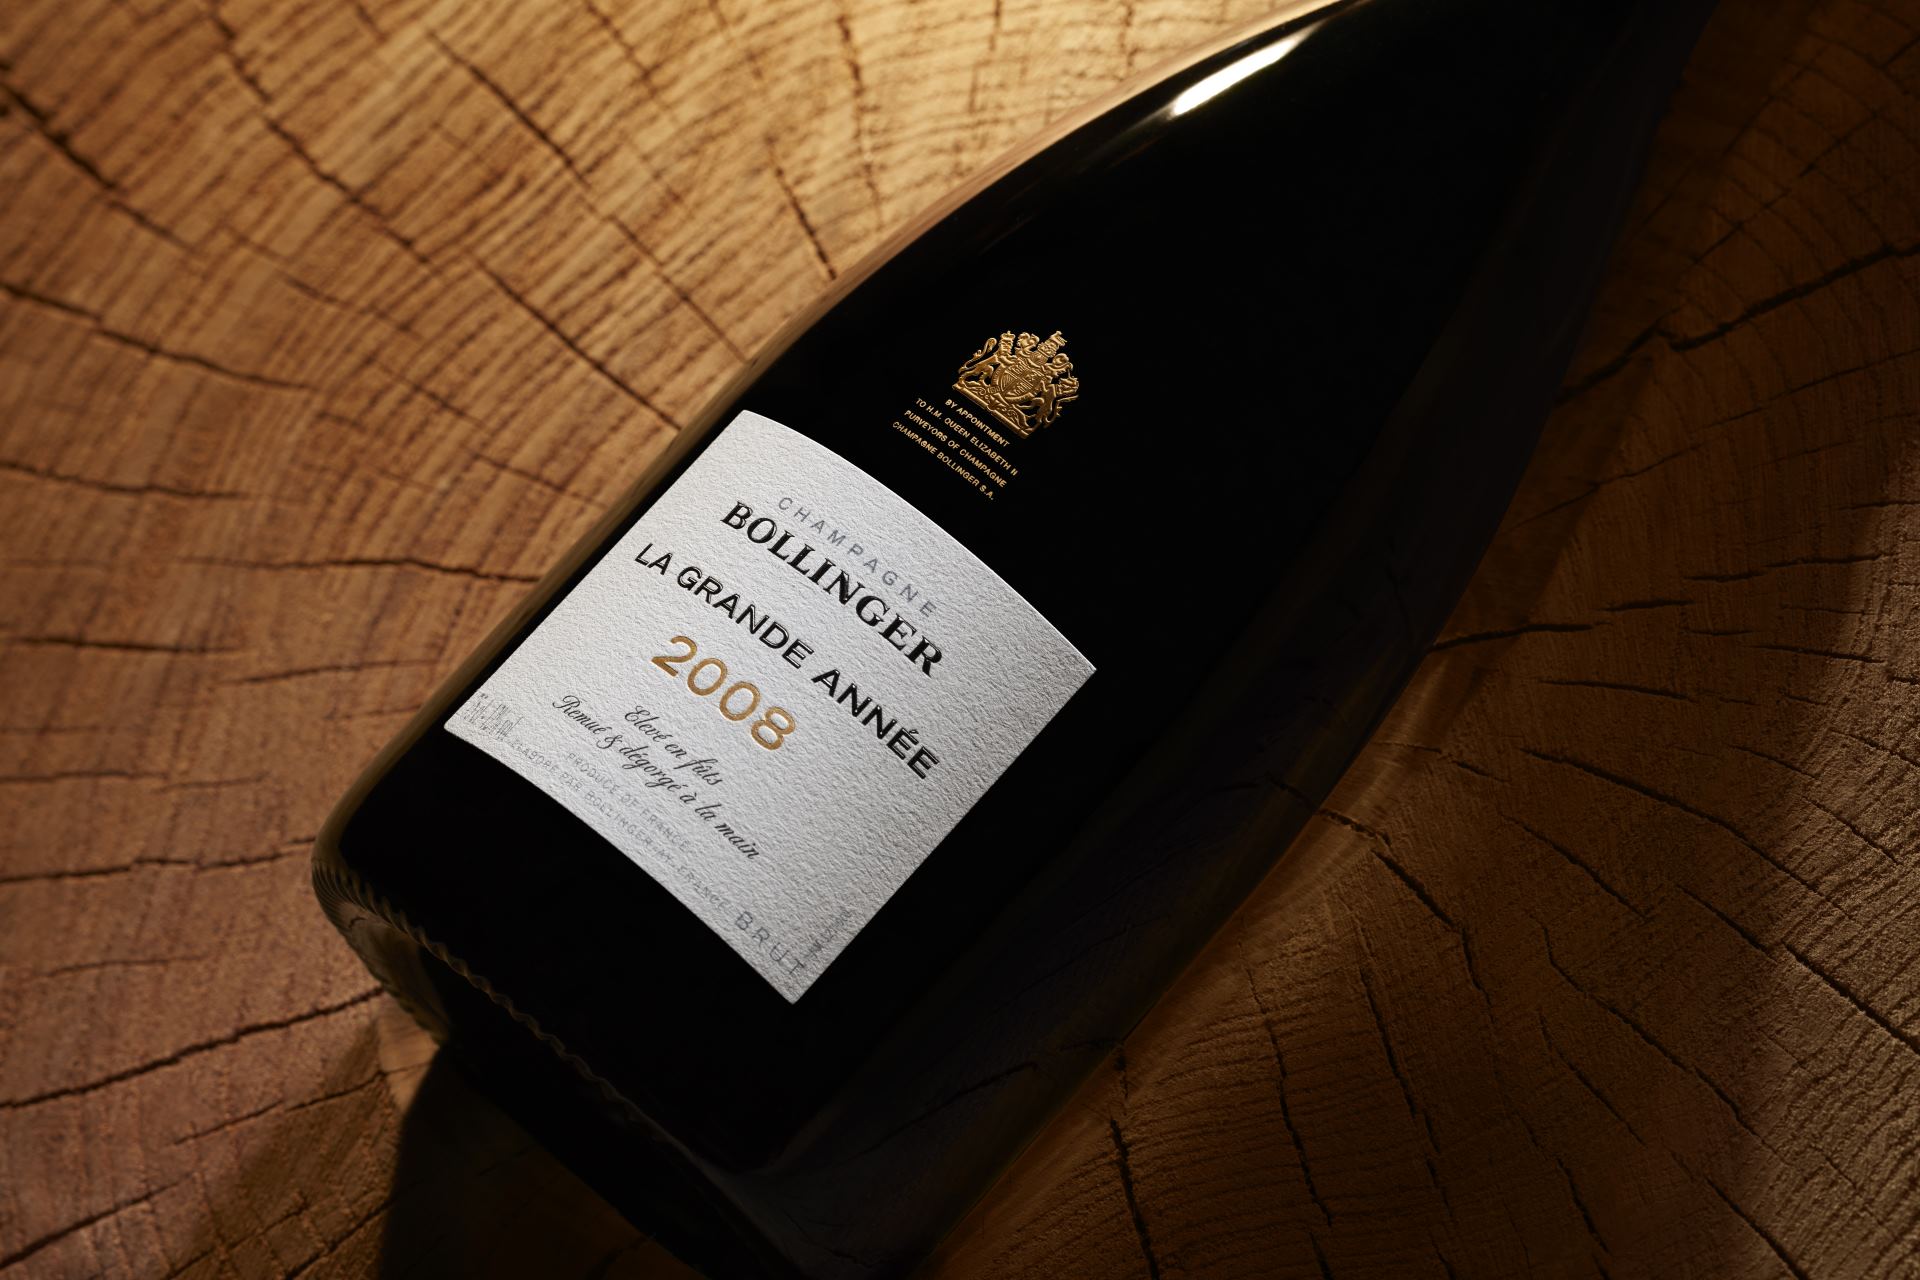 ボランジェ ラ・グランダネの新ヴィンテージが6/1発売開始 - シャンパン最新情報 - シャンパンが好き！